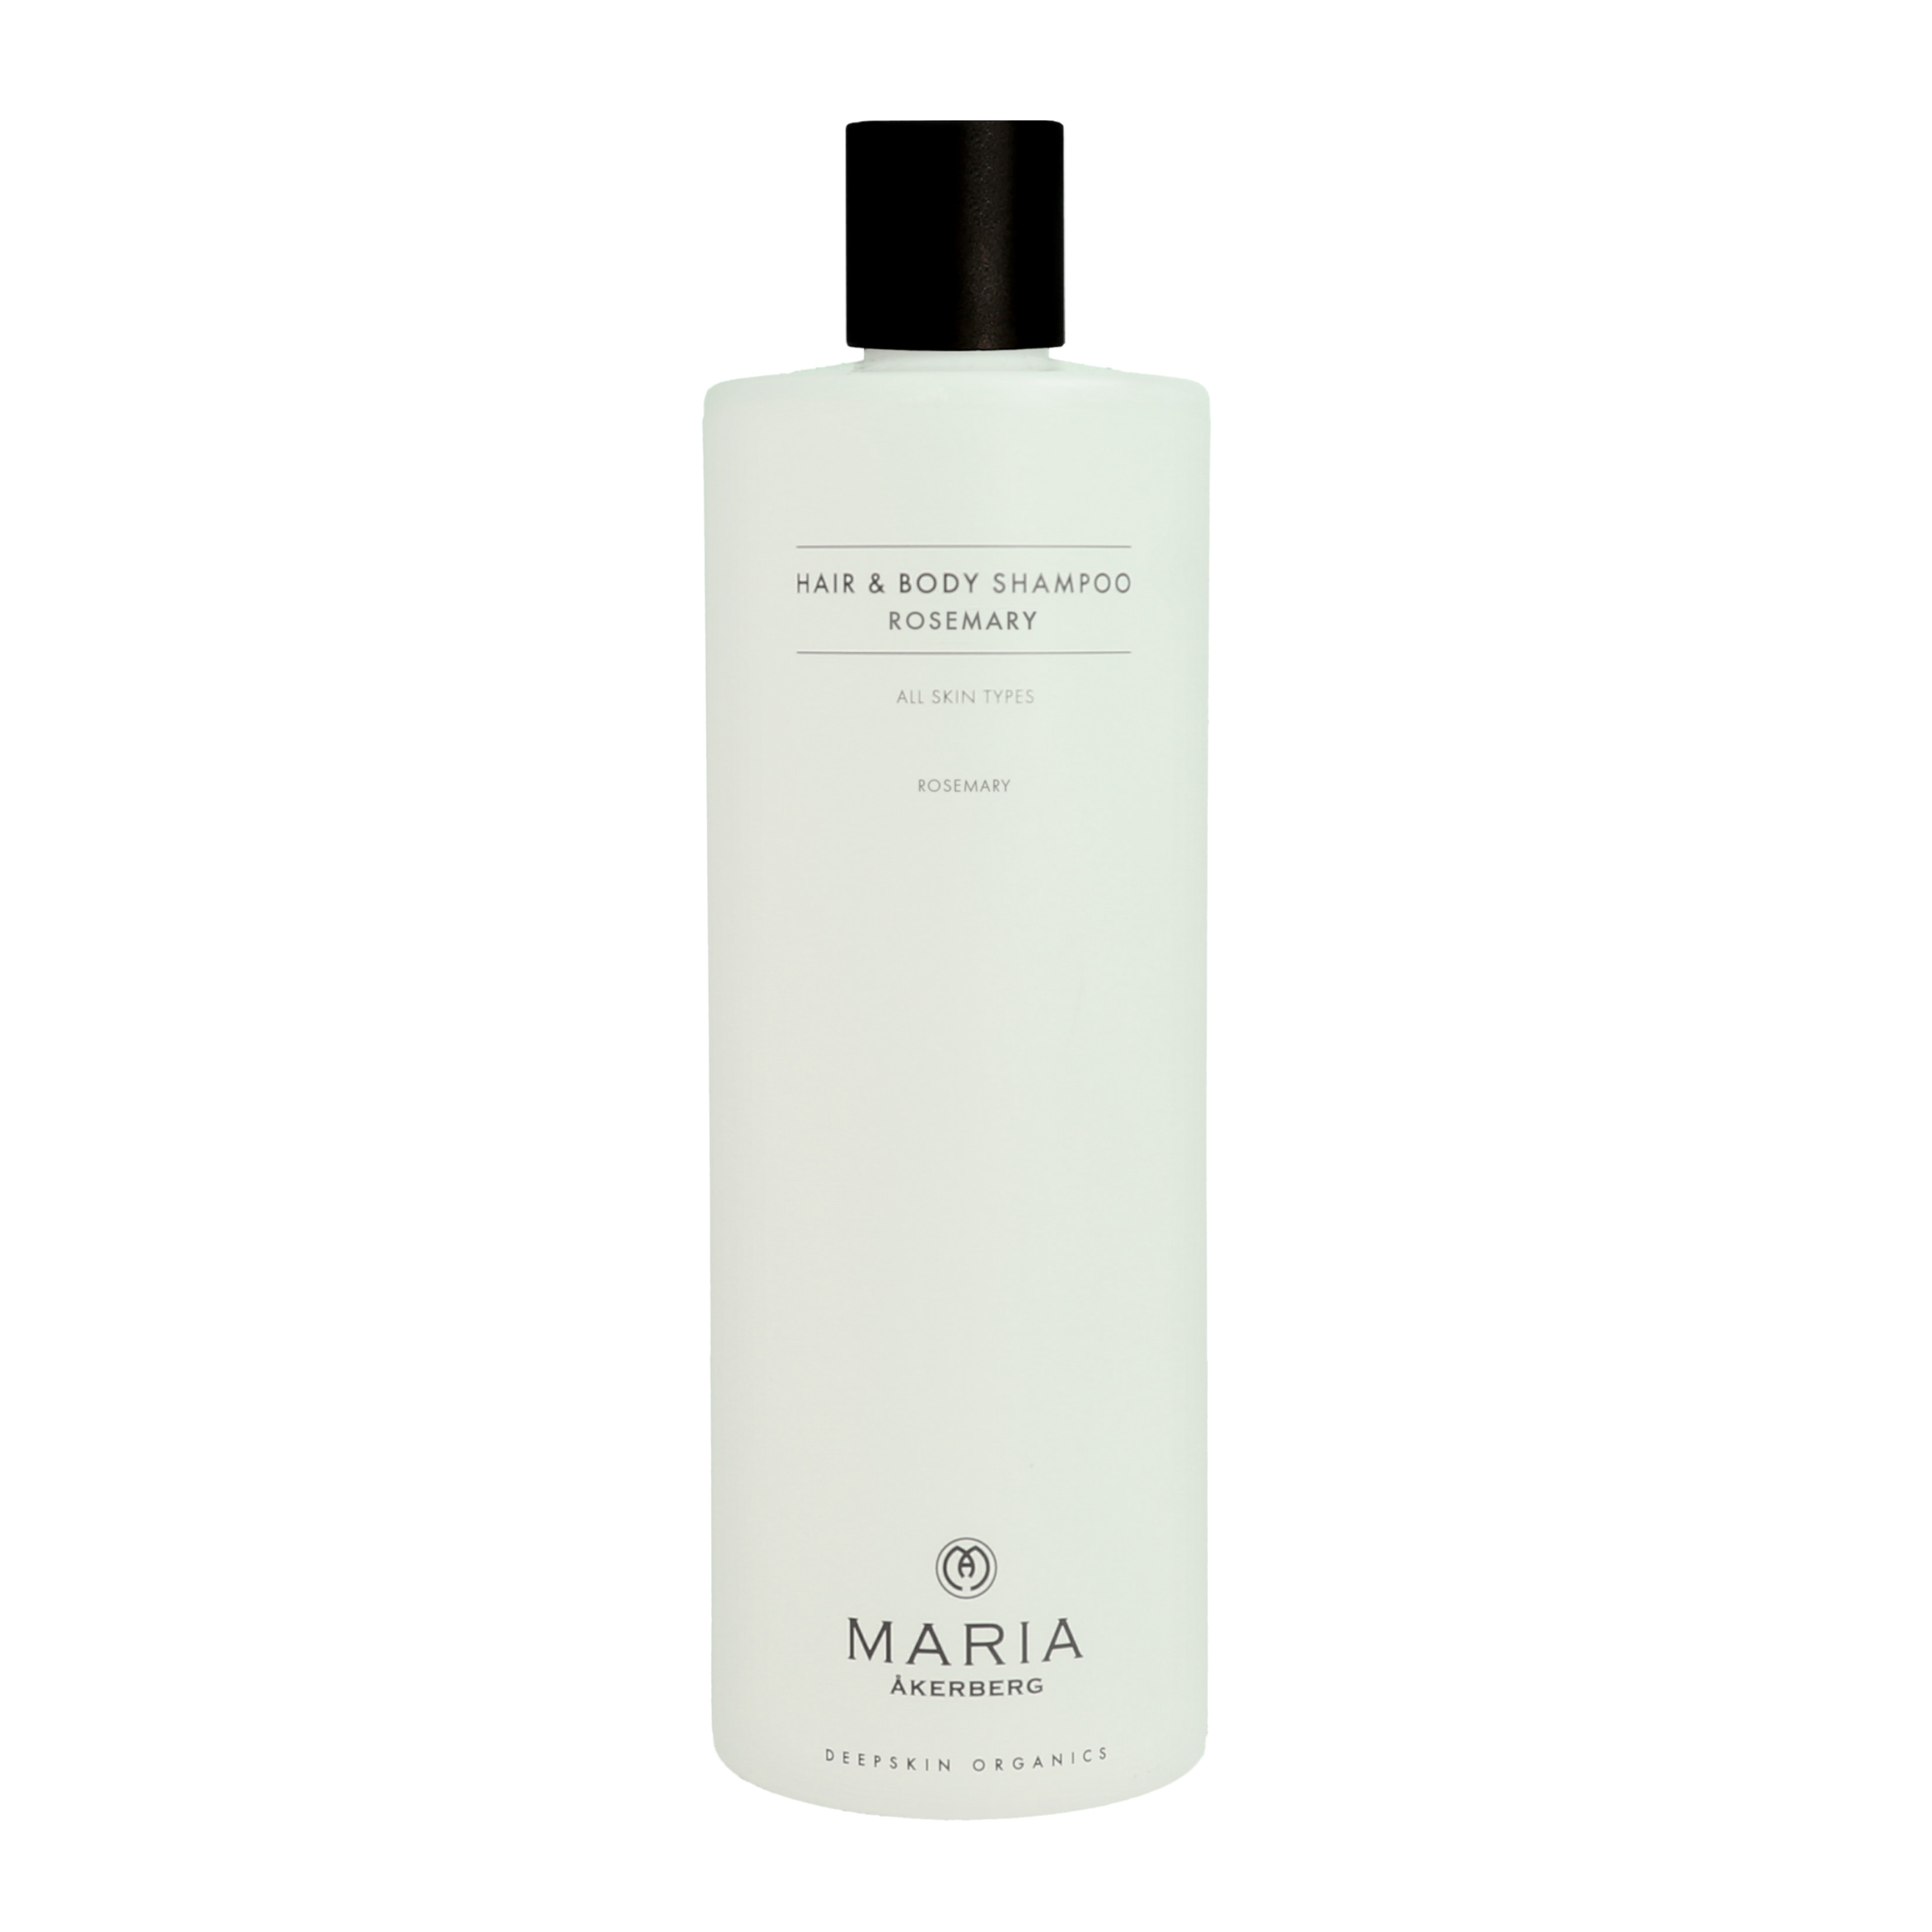 Hair & Body Shampoo Rosemary 500ml